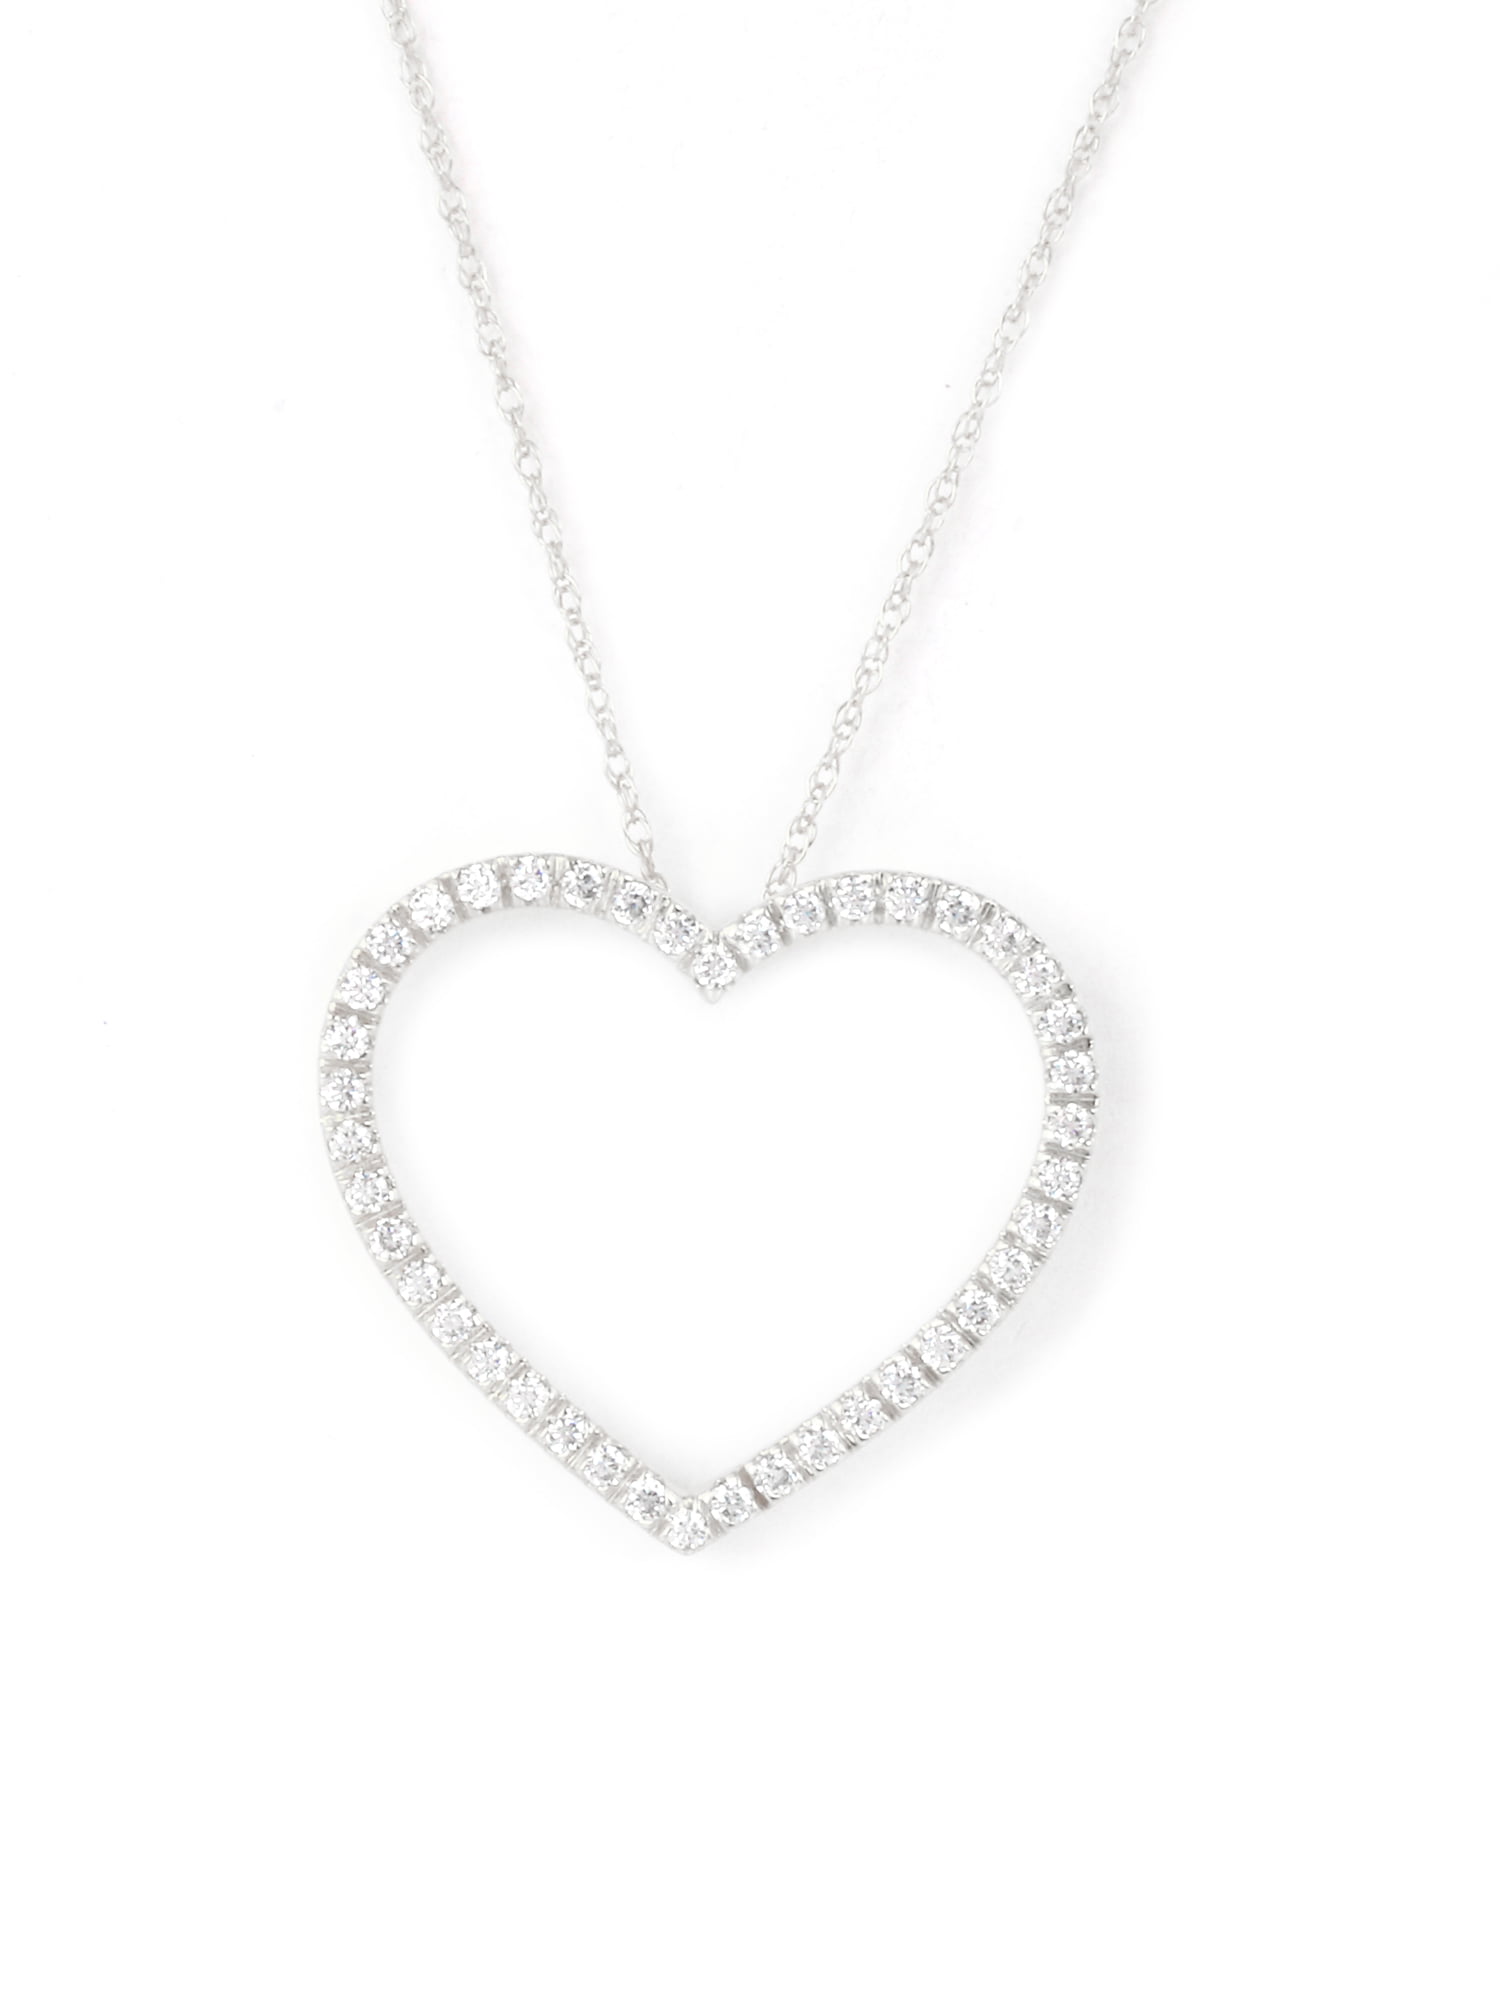 2Ct Baguette Cut VVS1 Diamond Open Heart Pendant Necklace 14k White Gold Finish 